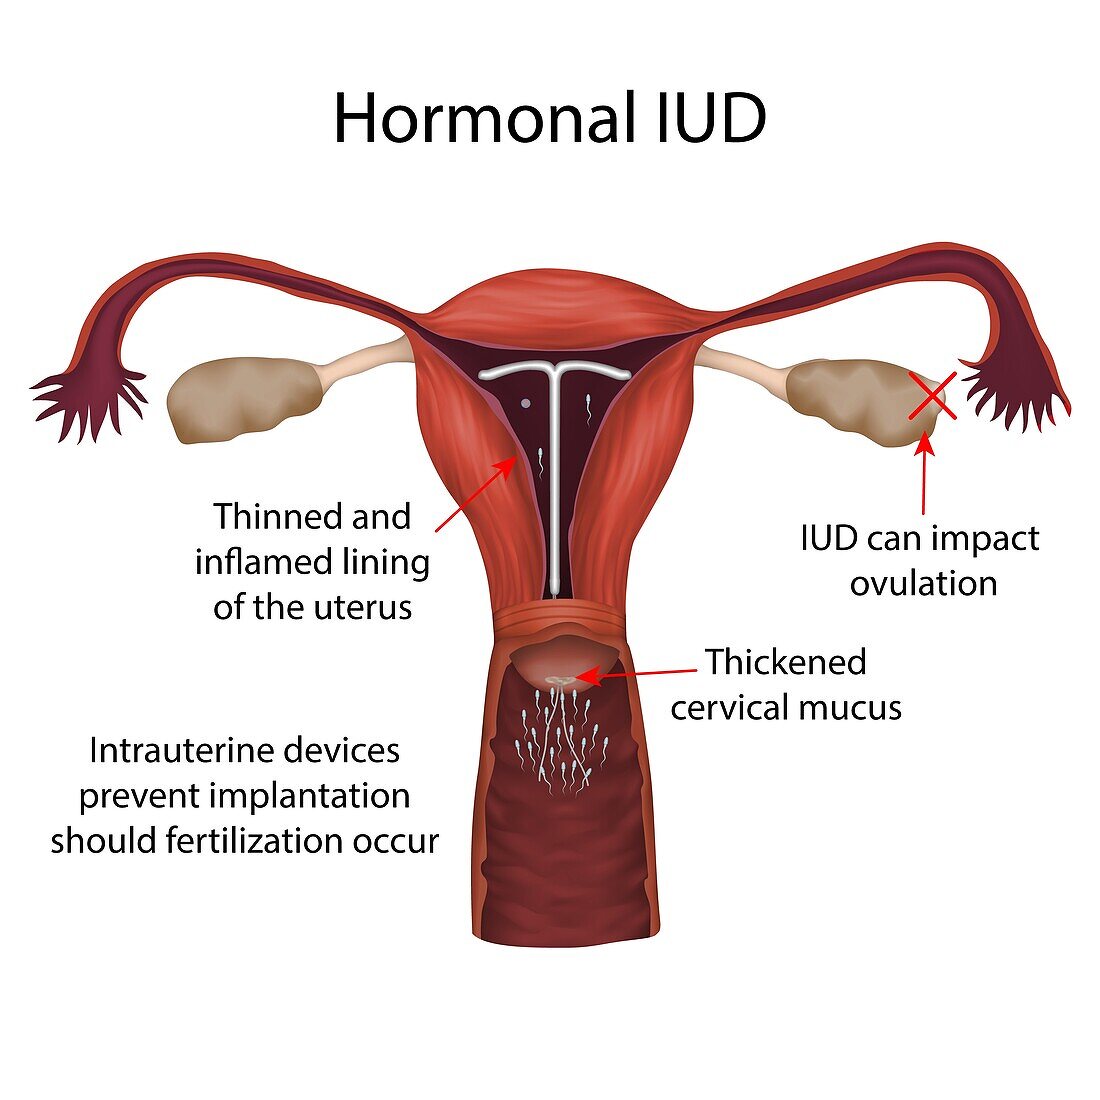 Hormonal IUD, illustration